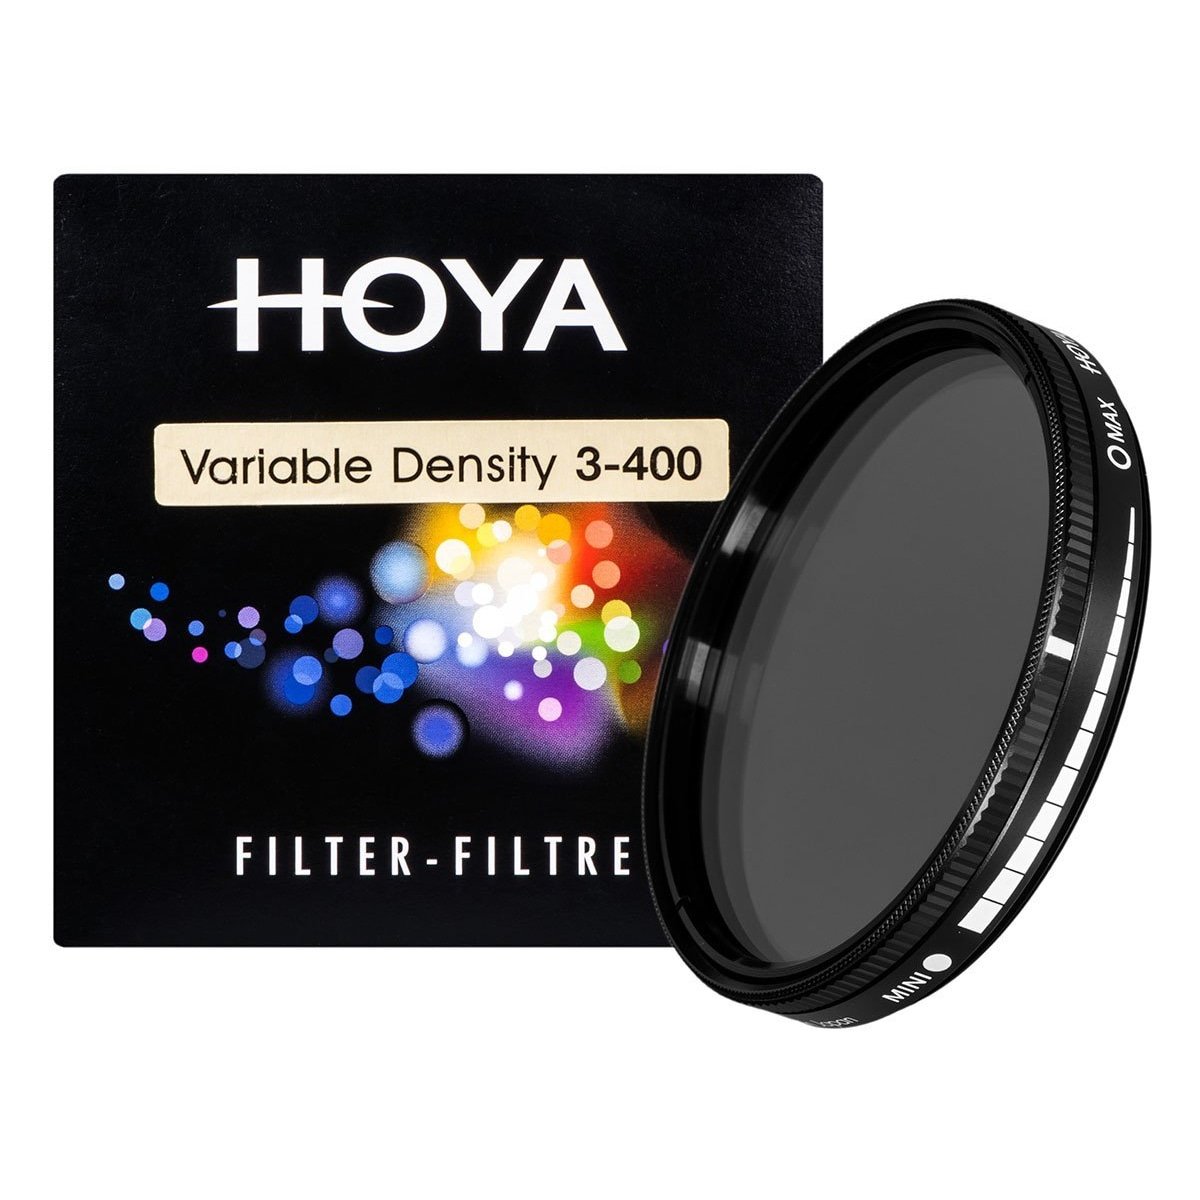 HOYA 77mm Variable Density 3-400 Filter Camera tek